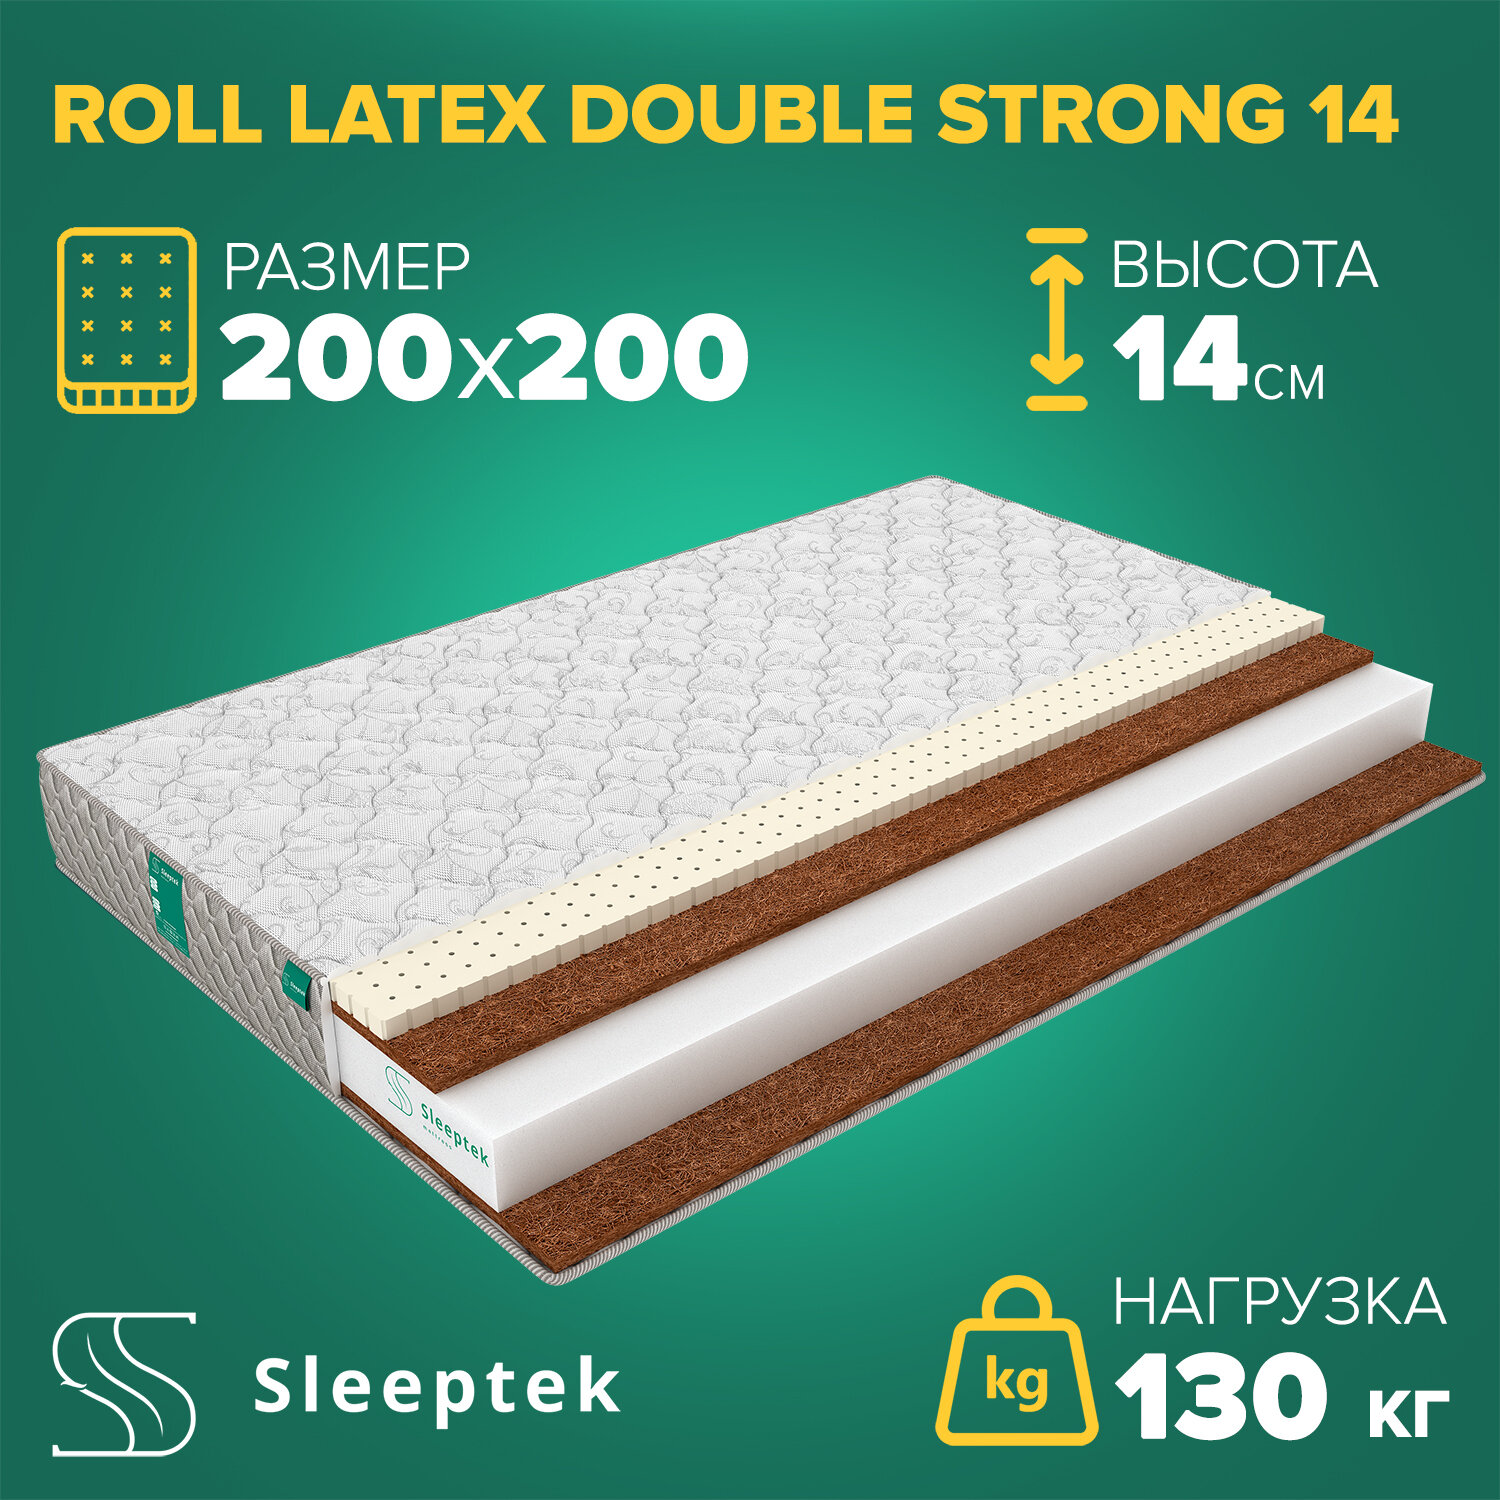 Матрас Sleeptek Roll Latex DoubleStrong 14 200х200